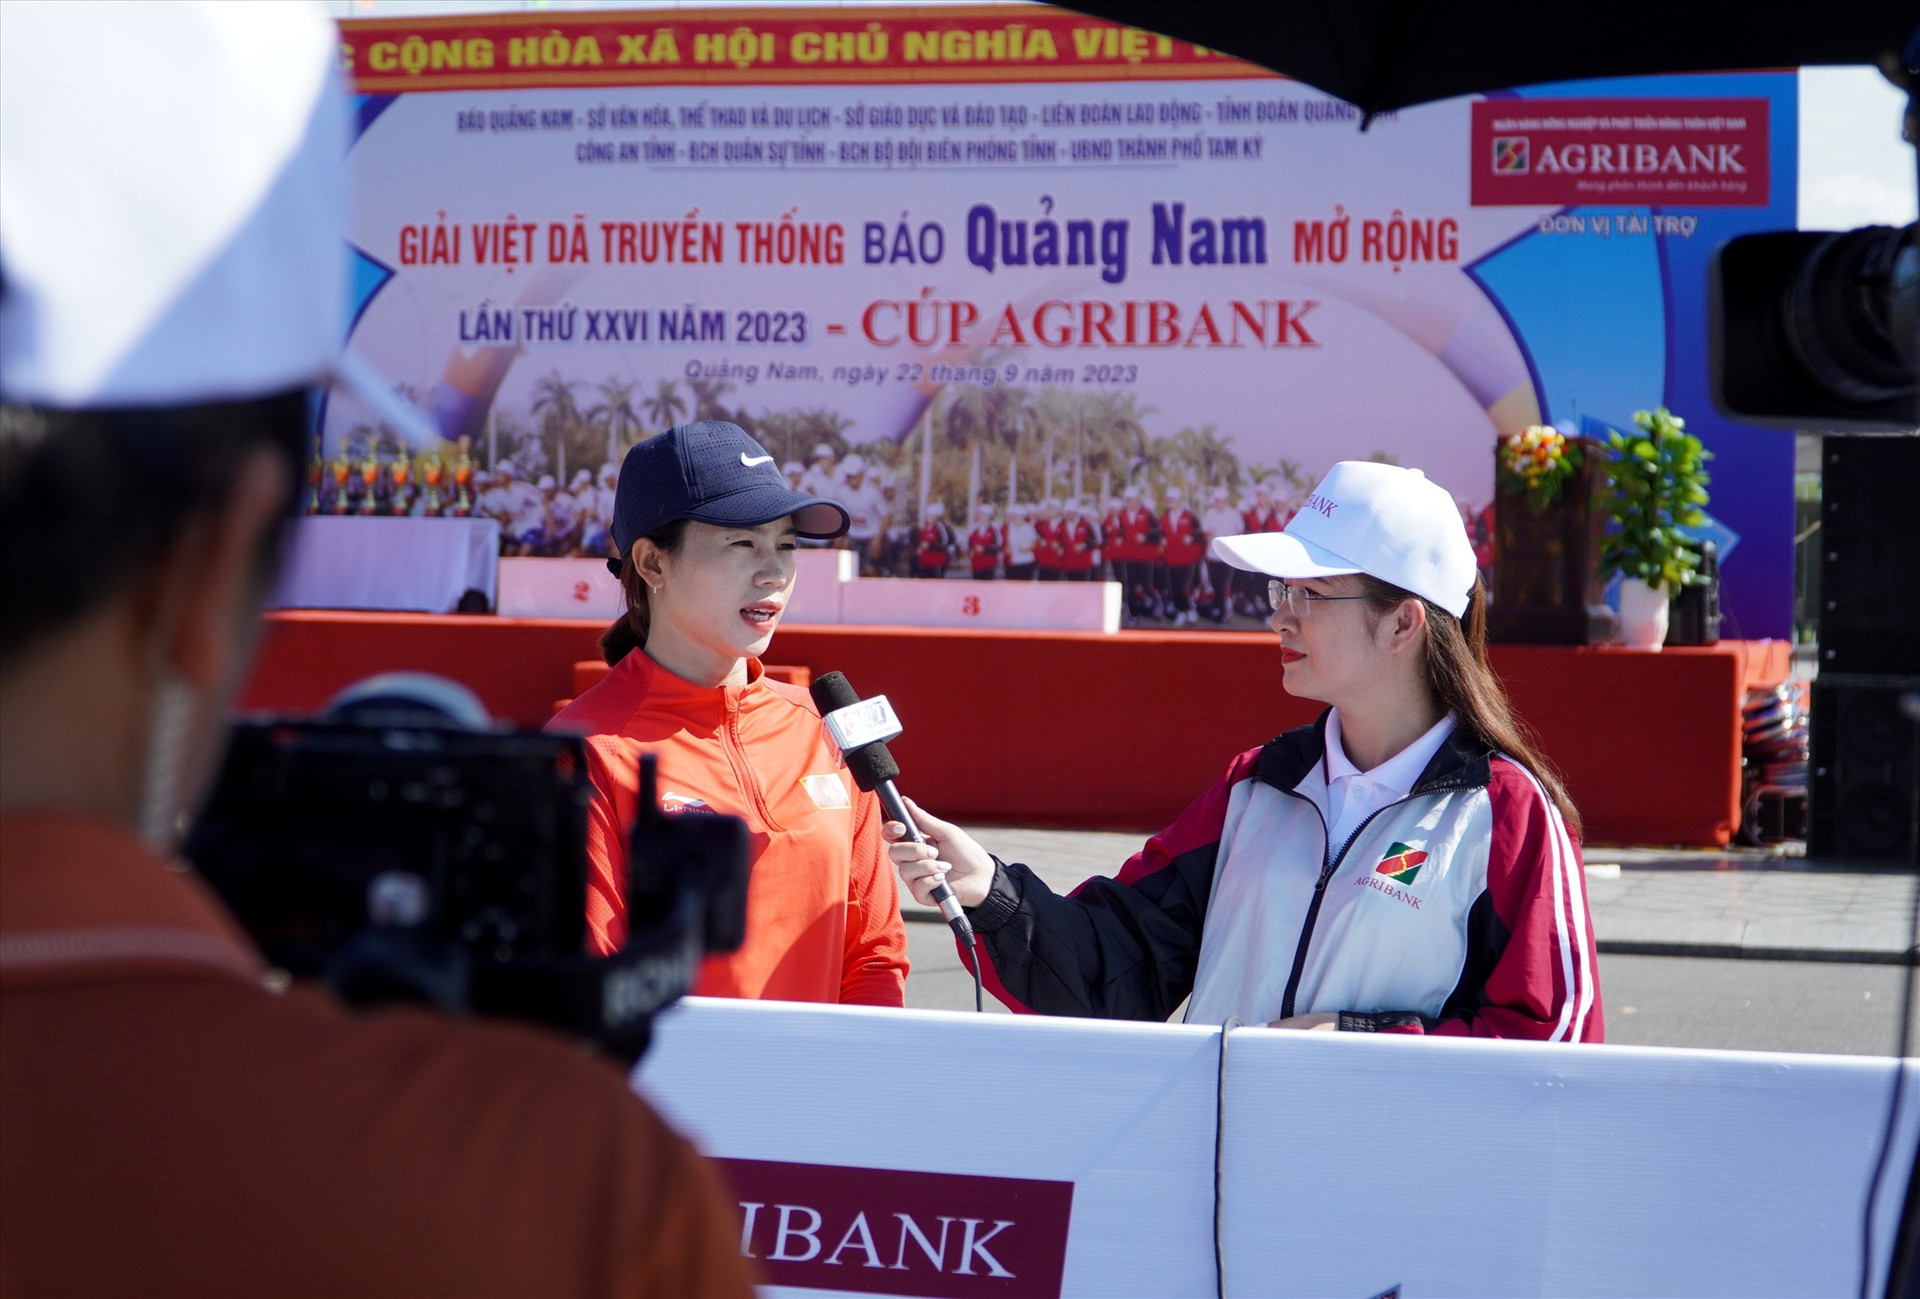 Vận động viên chia sẻ cảm xúc khi thi đấu tại Giải Việt dã truyền thống Báo Quảng Nam mở rộng lần thứ 26, tranh CUP Agribank năm 2023. Ảnh: HỒ QUÂN